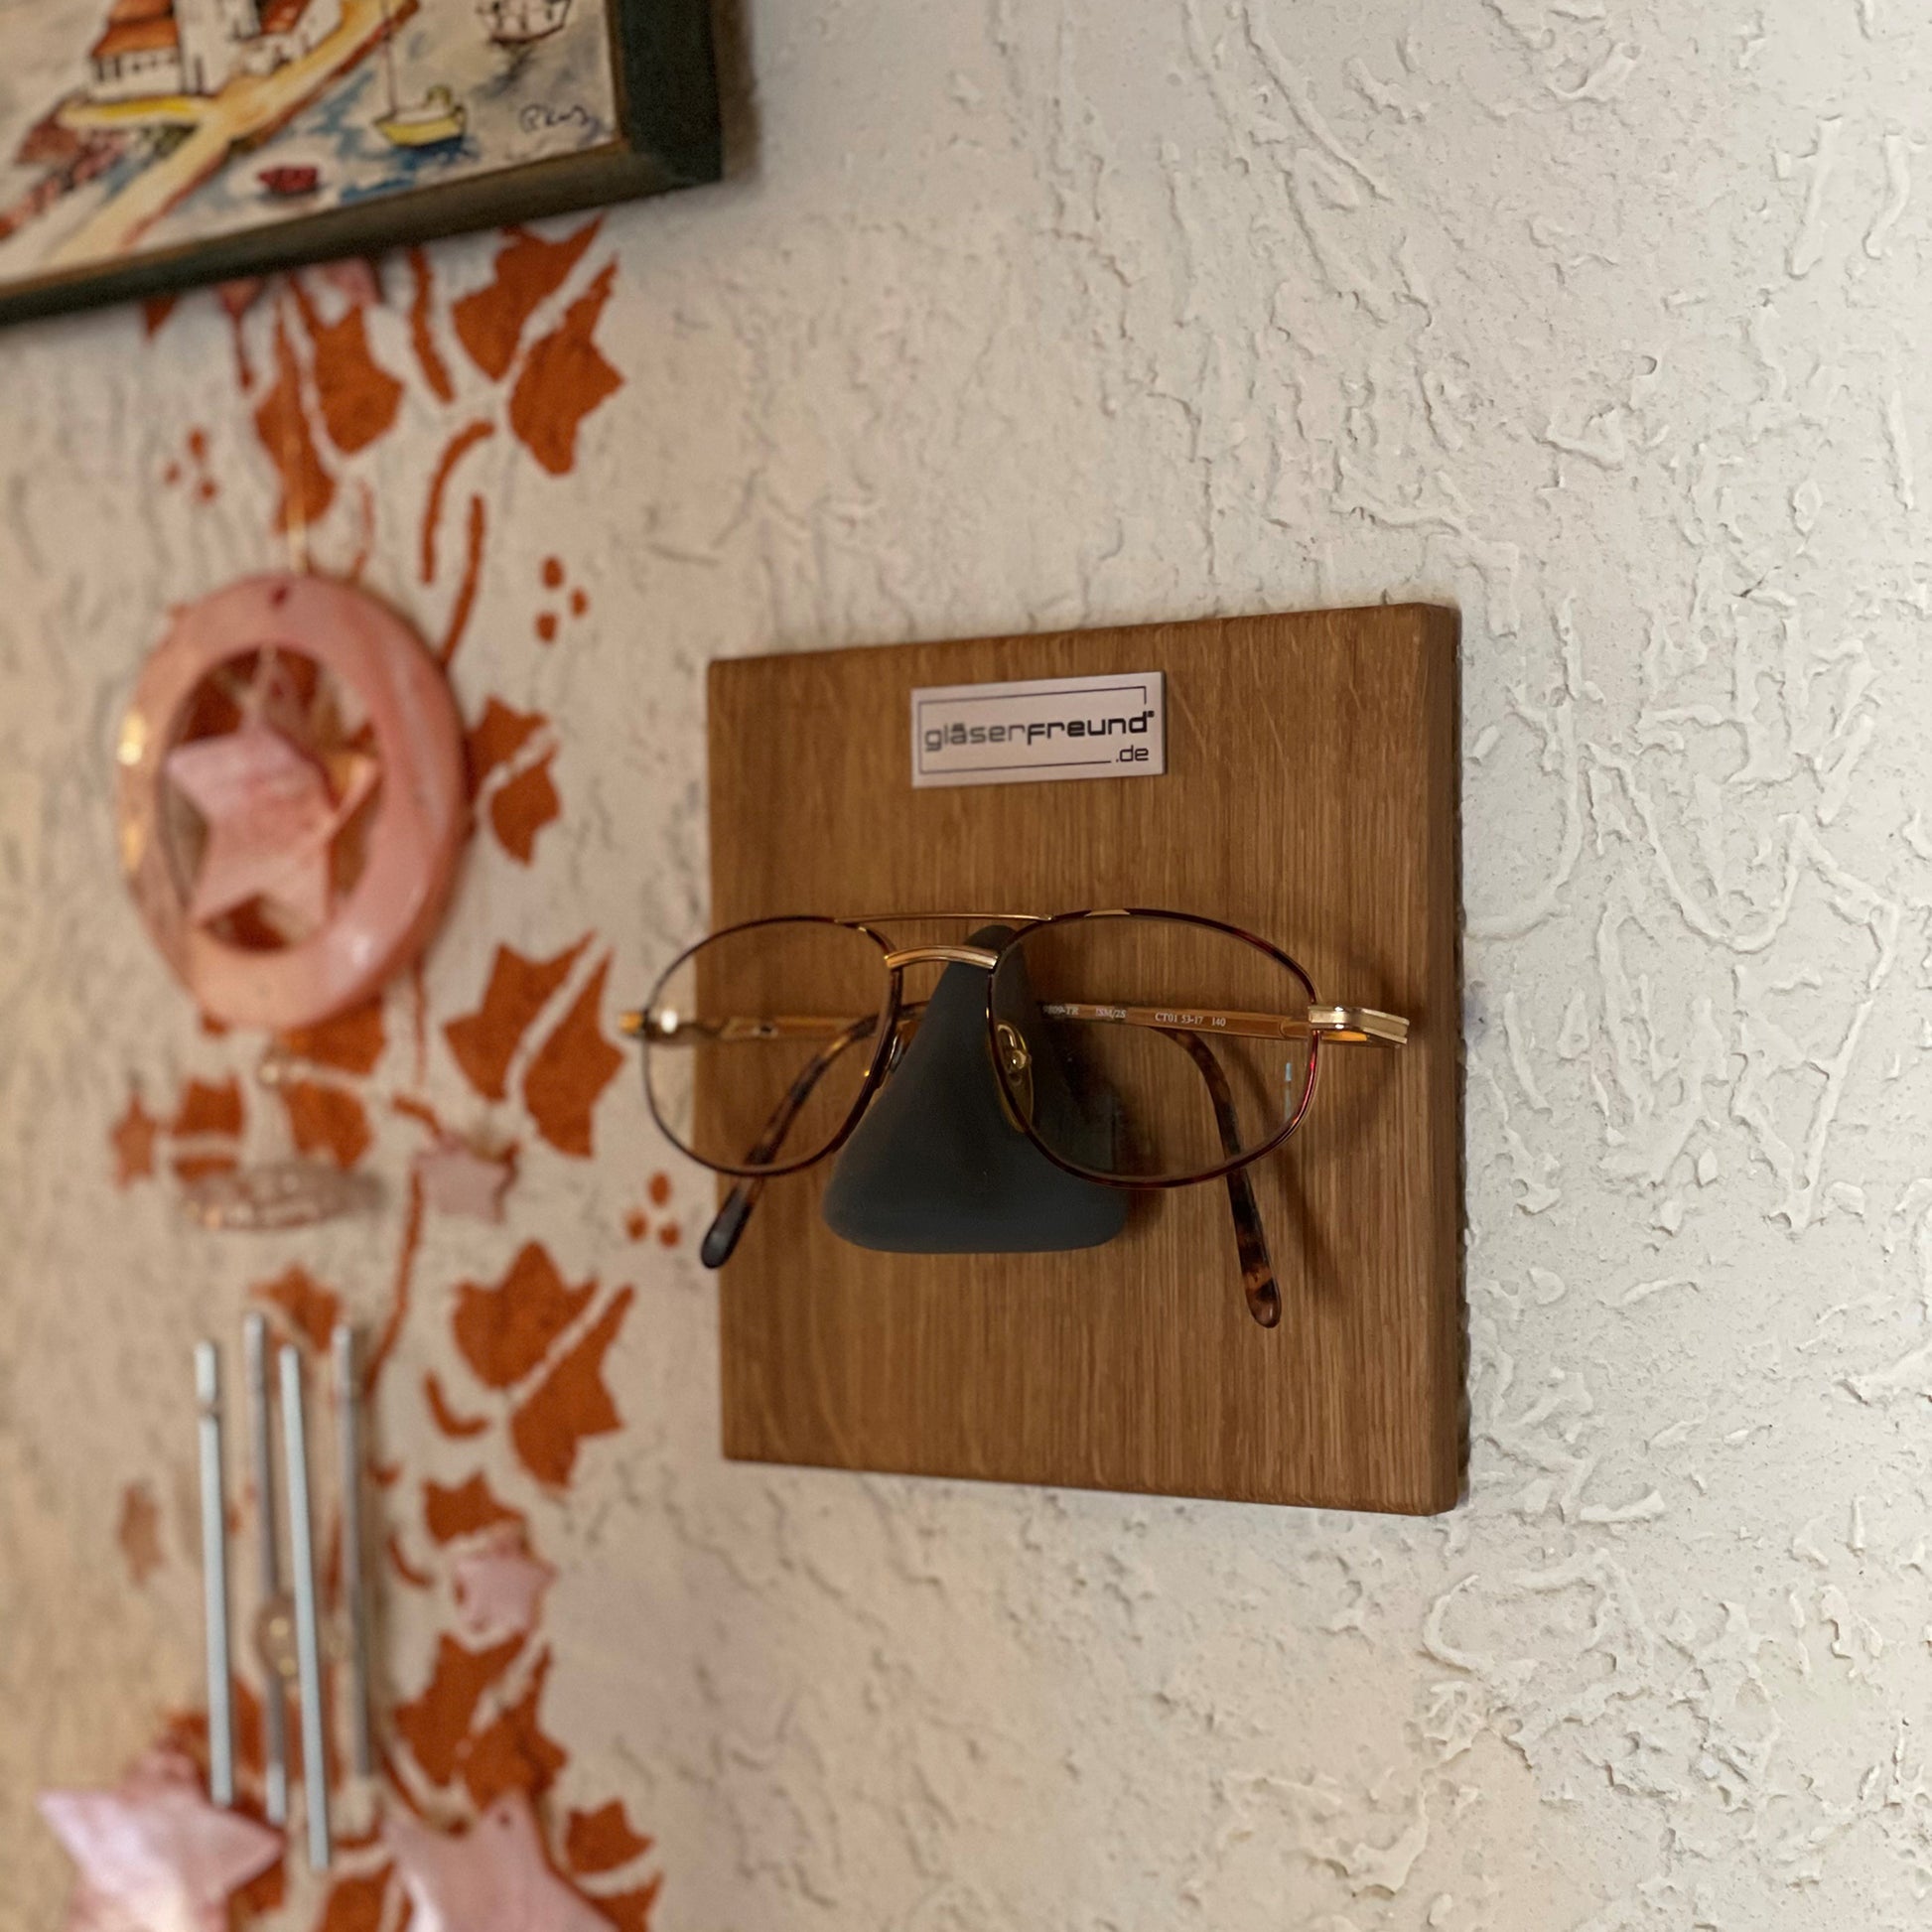 Gläserfreund Kessy Brillenorganizer und Brillenhalter für die Wand -  Brillenaufbewahrung für mehrere Brillen, Brillenregal für mehr Ordnung :  : Küche, Haushalt & Wohnen